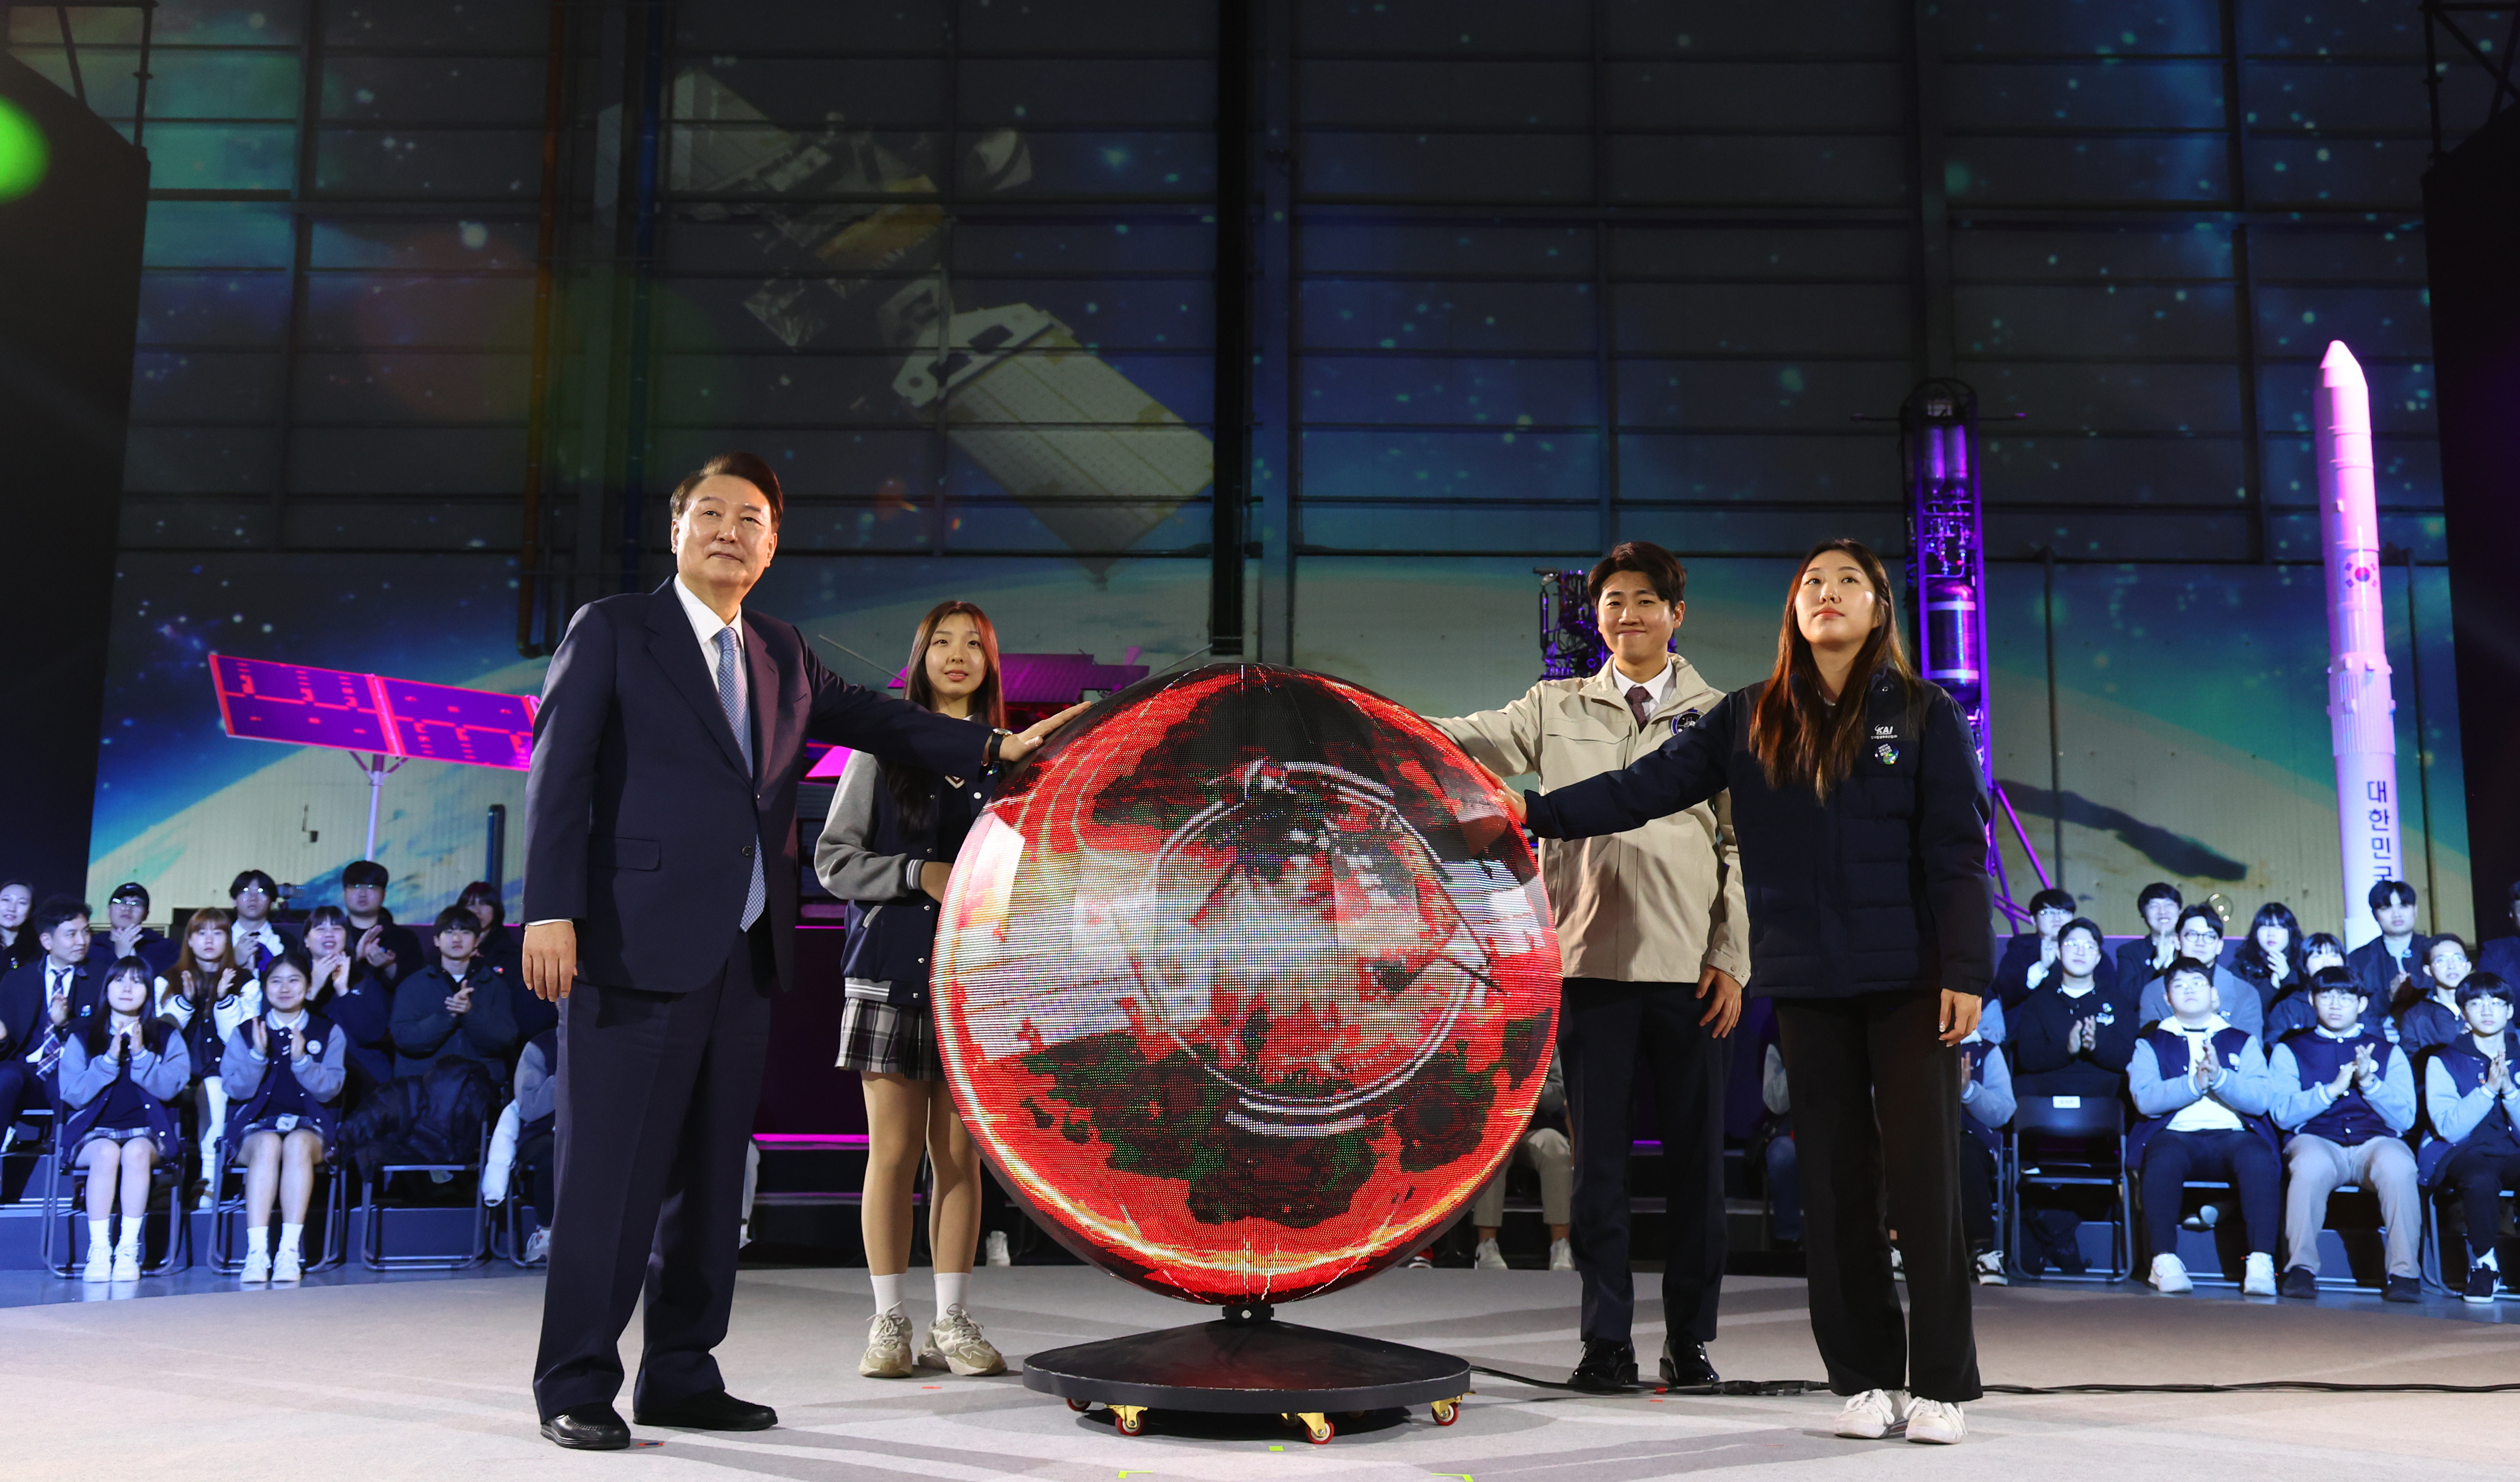 Le président Yoon Suk Yeol participe à l’inauguration du cluster de l’industrie aérospatiale, au siège du conglomérat Korea Aerospace Industries (KAI), à Sacheon, dans la province du Gyeongsang du Sud, le 13 mars 2024. Le chef de l’État s’est engagé à débloquer plus de 1 500 milliards de wons d’ici 2027 dans l’industrie aérospatiale. Cette annonce intervient après la réussite par la Corée de la mise en orbite de sa première sonde lunaire, Danuri, le 17 décembre 2022, et du lancement de sa fusée spatiale, Nuri, le 25 mai 2023. L’administration coréenne aérospatiale (KASA) sera quant à elle inaugurée le 27 mai.